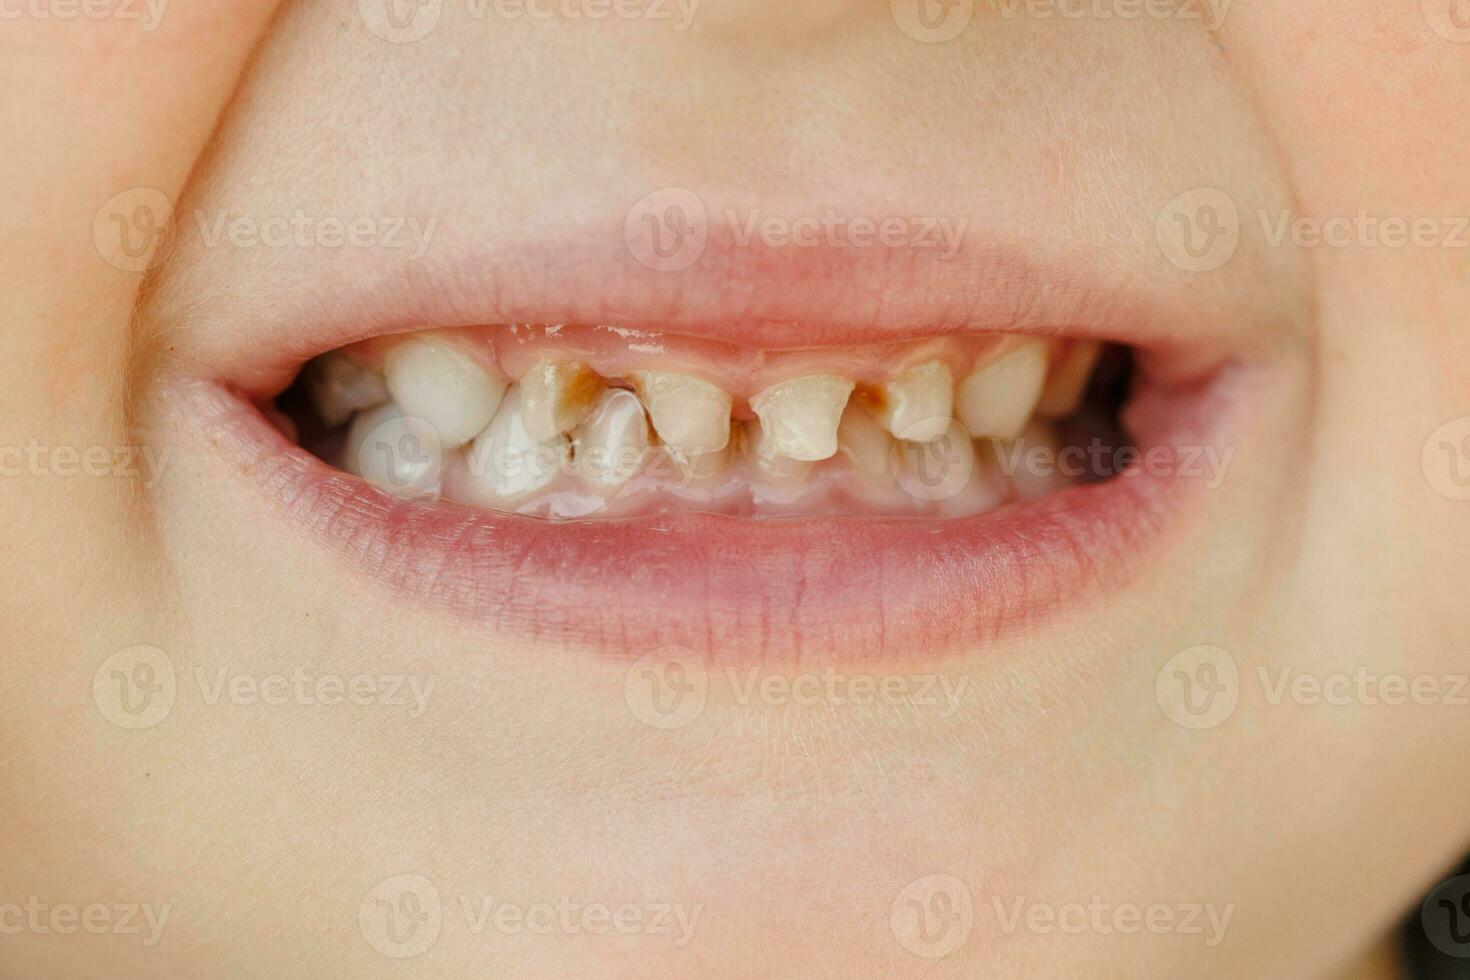 crianças leite dentes com cárie. fechar-se do pouco saudável leite dentes. dental remédio e cuidados de saúde - pacientes aberto boca mostrando cárie. crianças dentista. foto